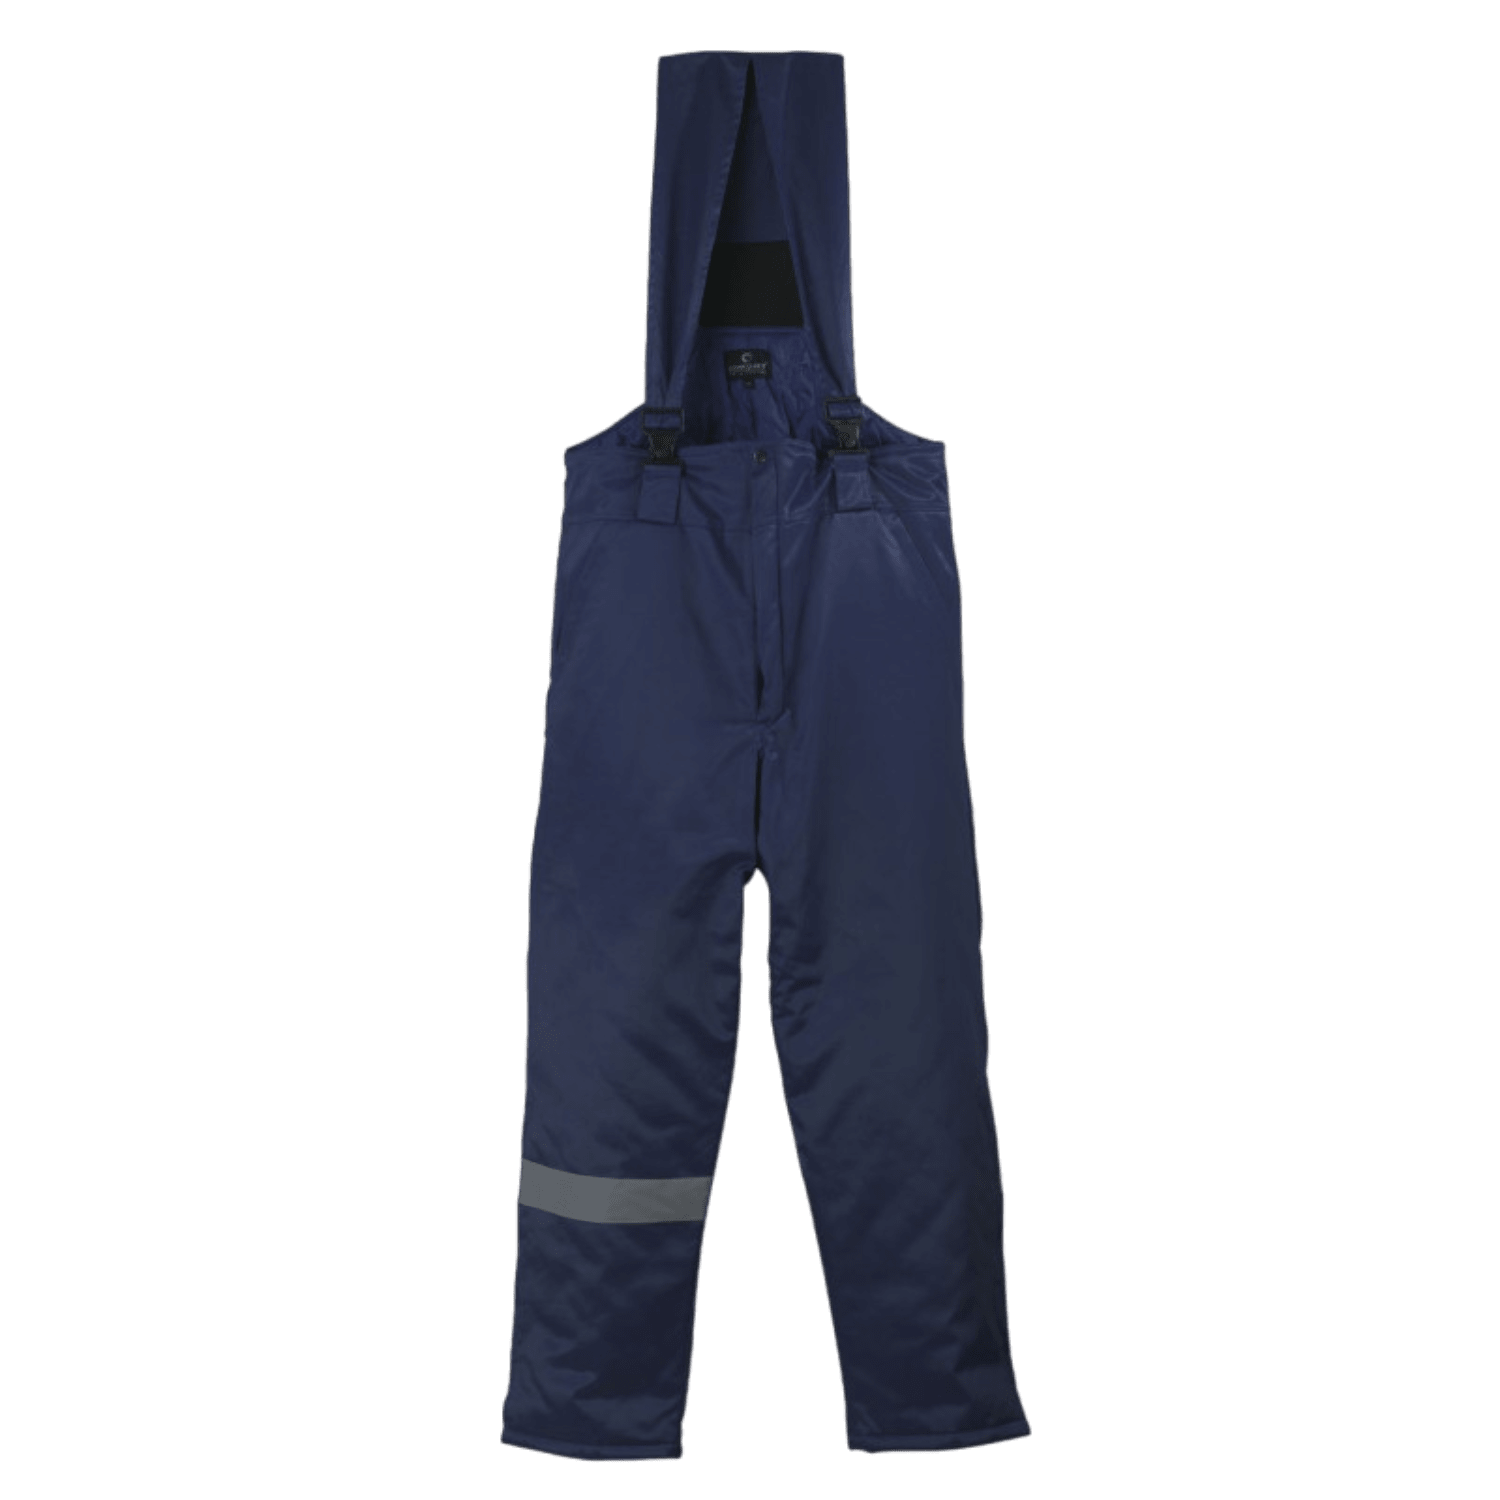 Pantalon de protection grand froid coton/polyester bleu taille M photo du produit